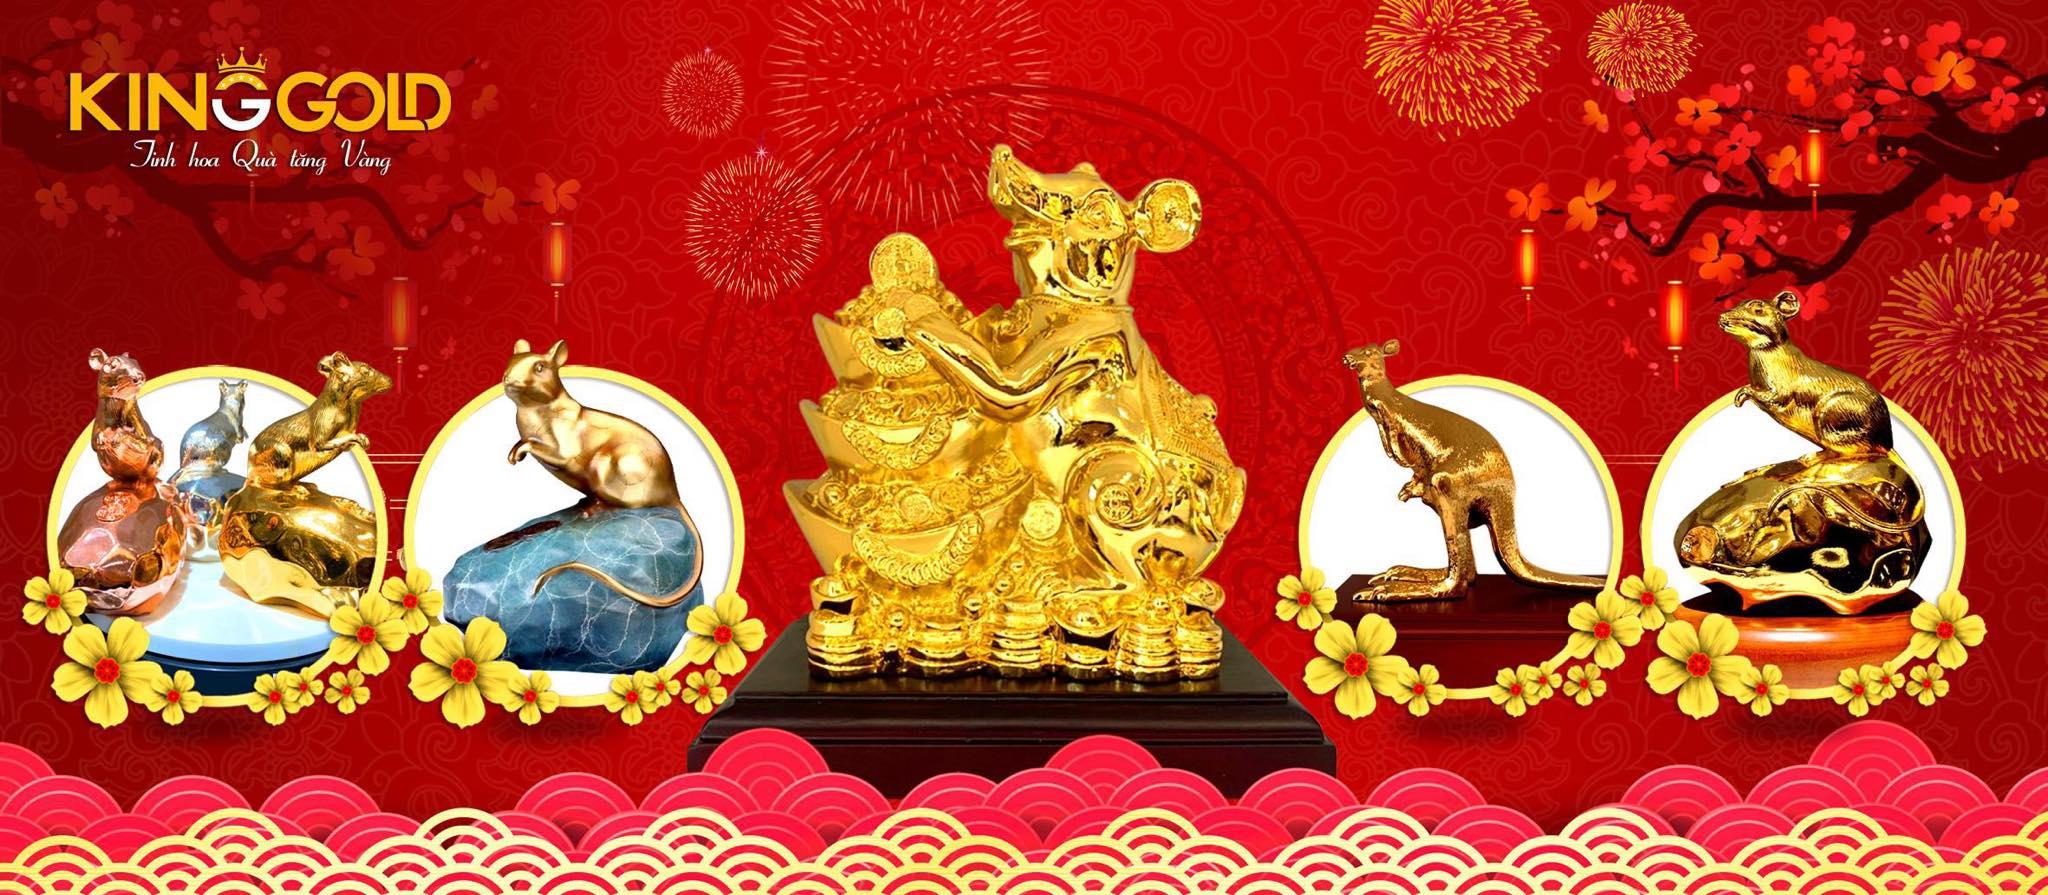 King Gold tung bộ chuột phú quý dát vàng dịp năm mới